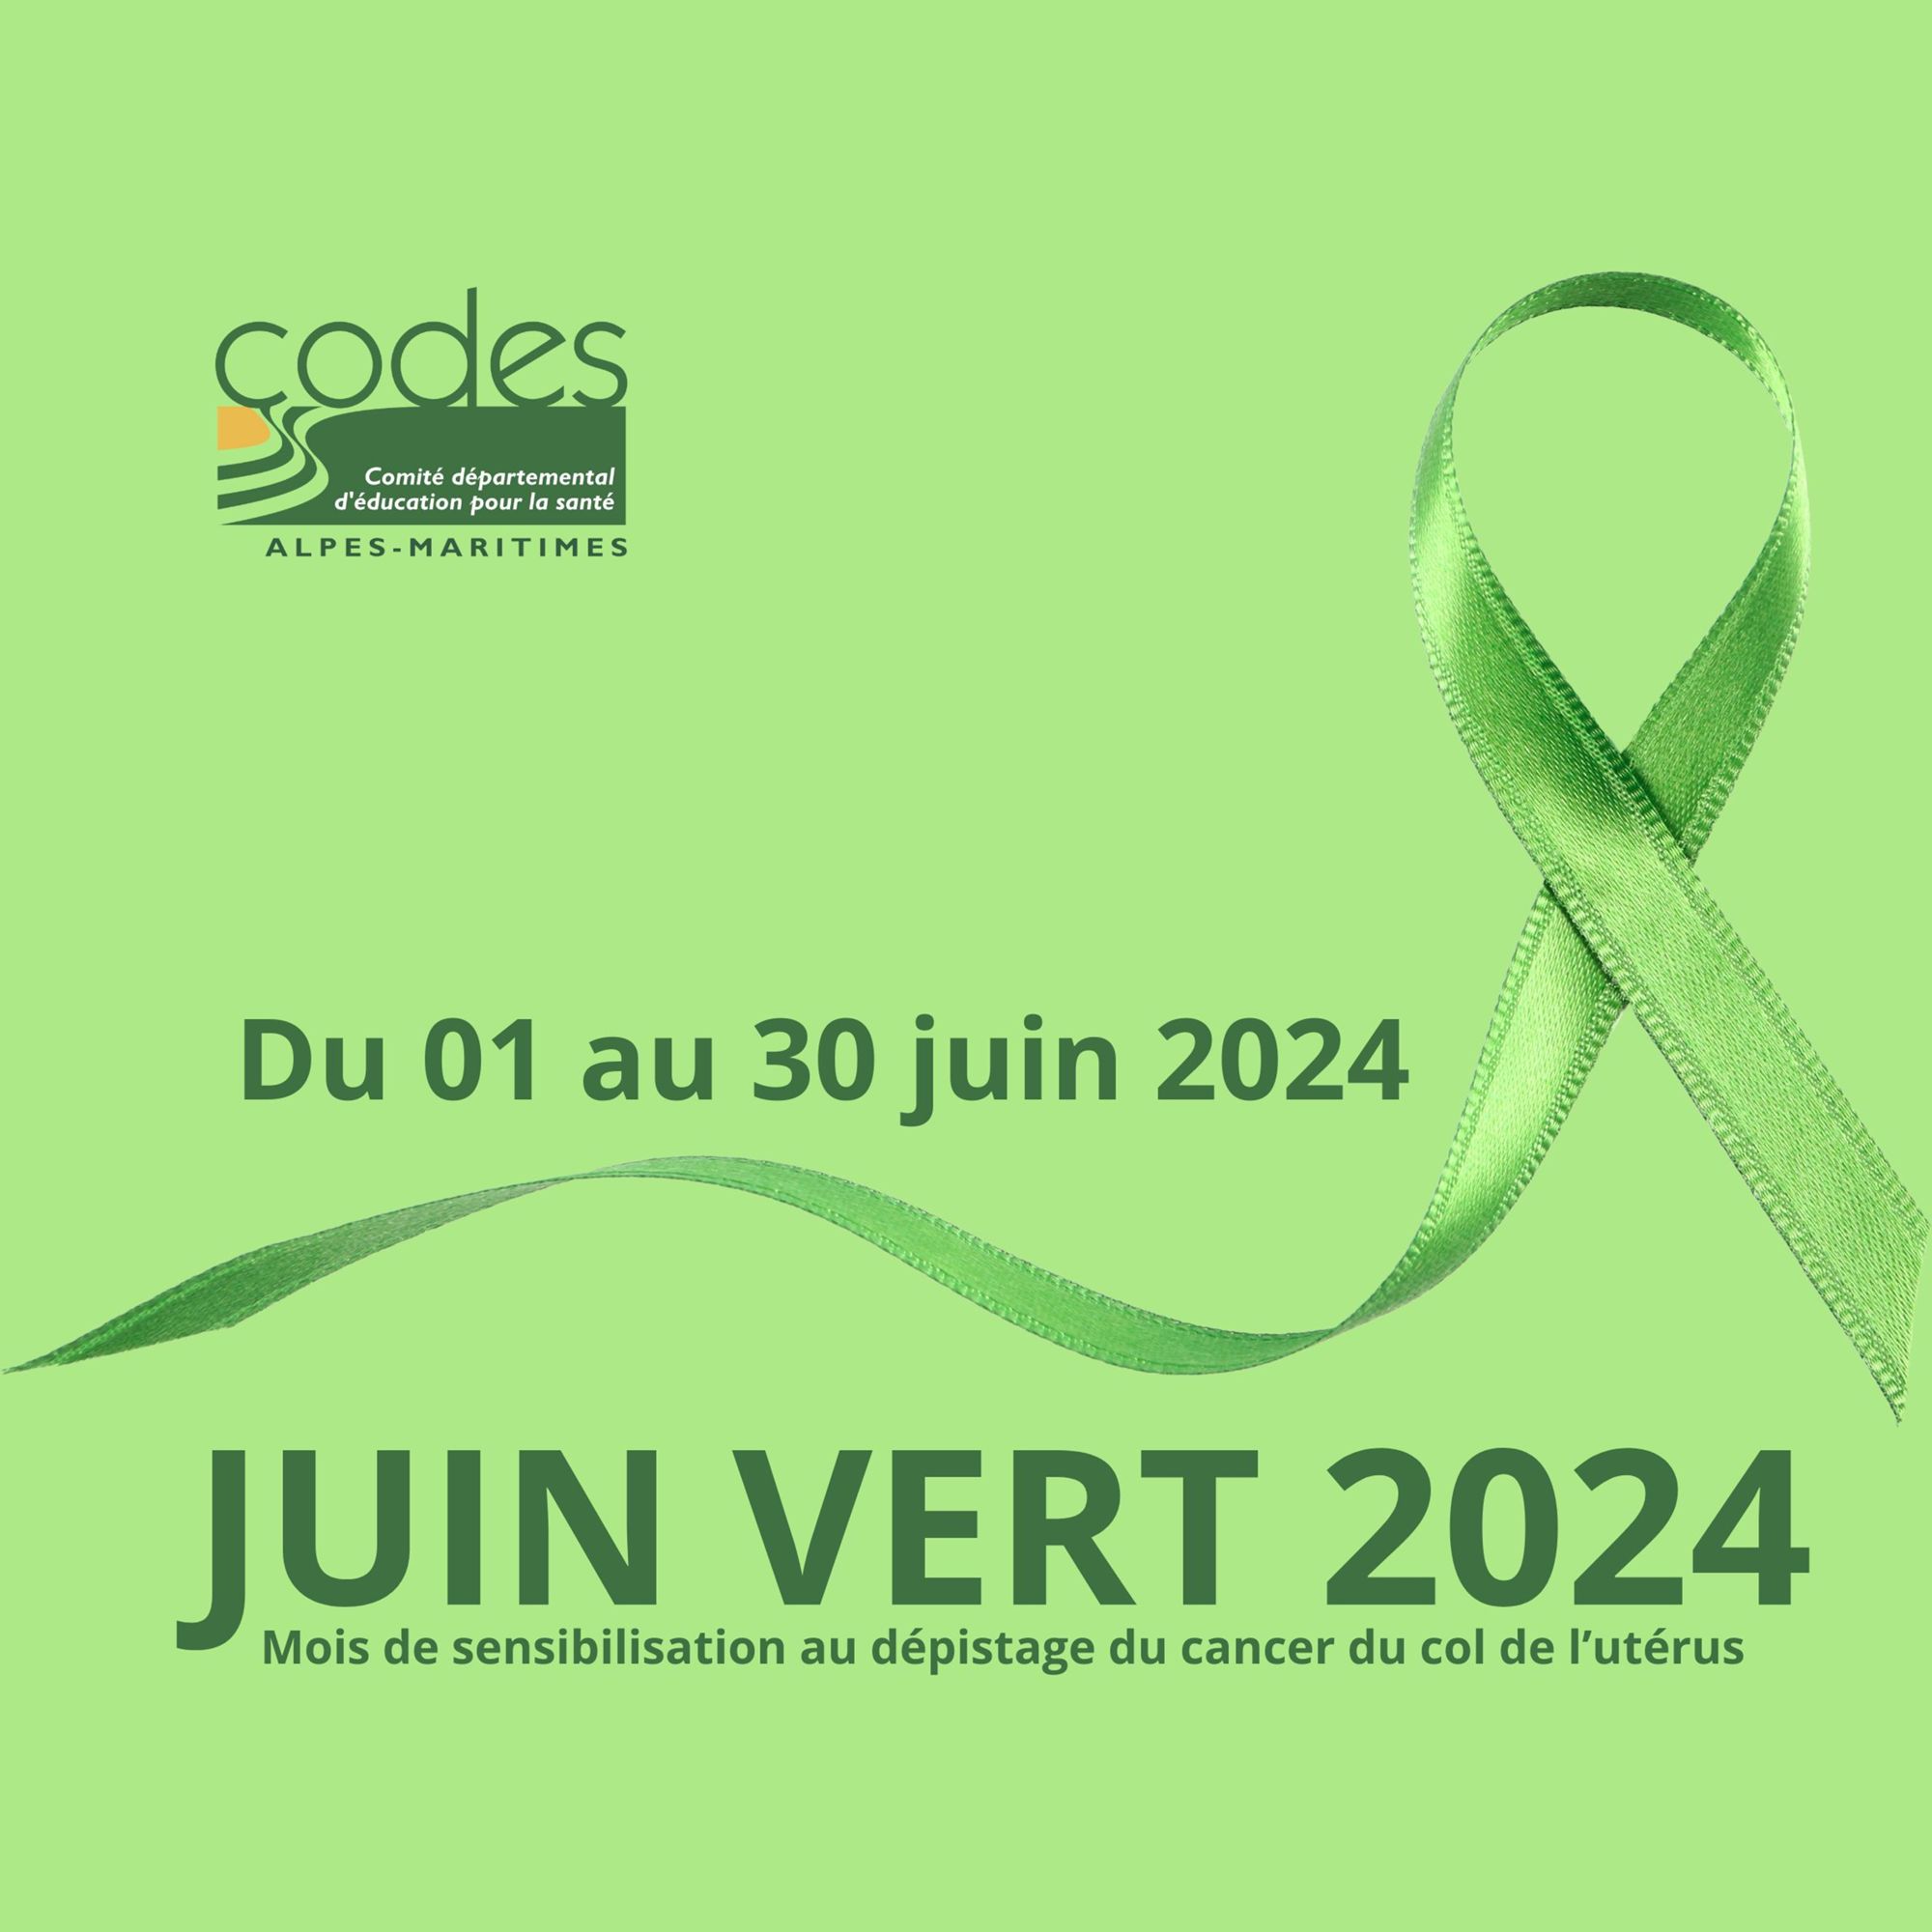 Juin Vert 2024, mois de sensibilisation au dépistage du cancer du col de l’utérus